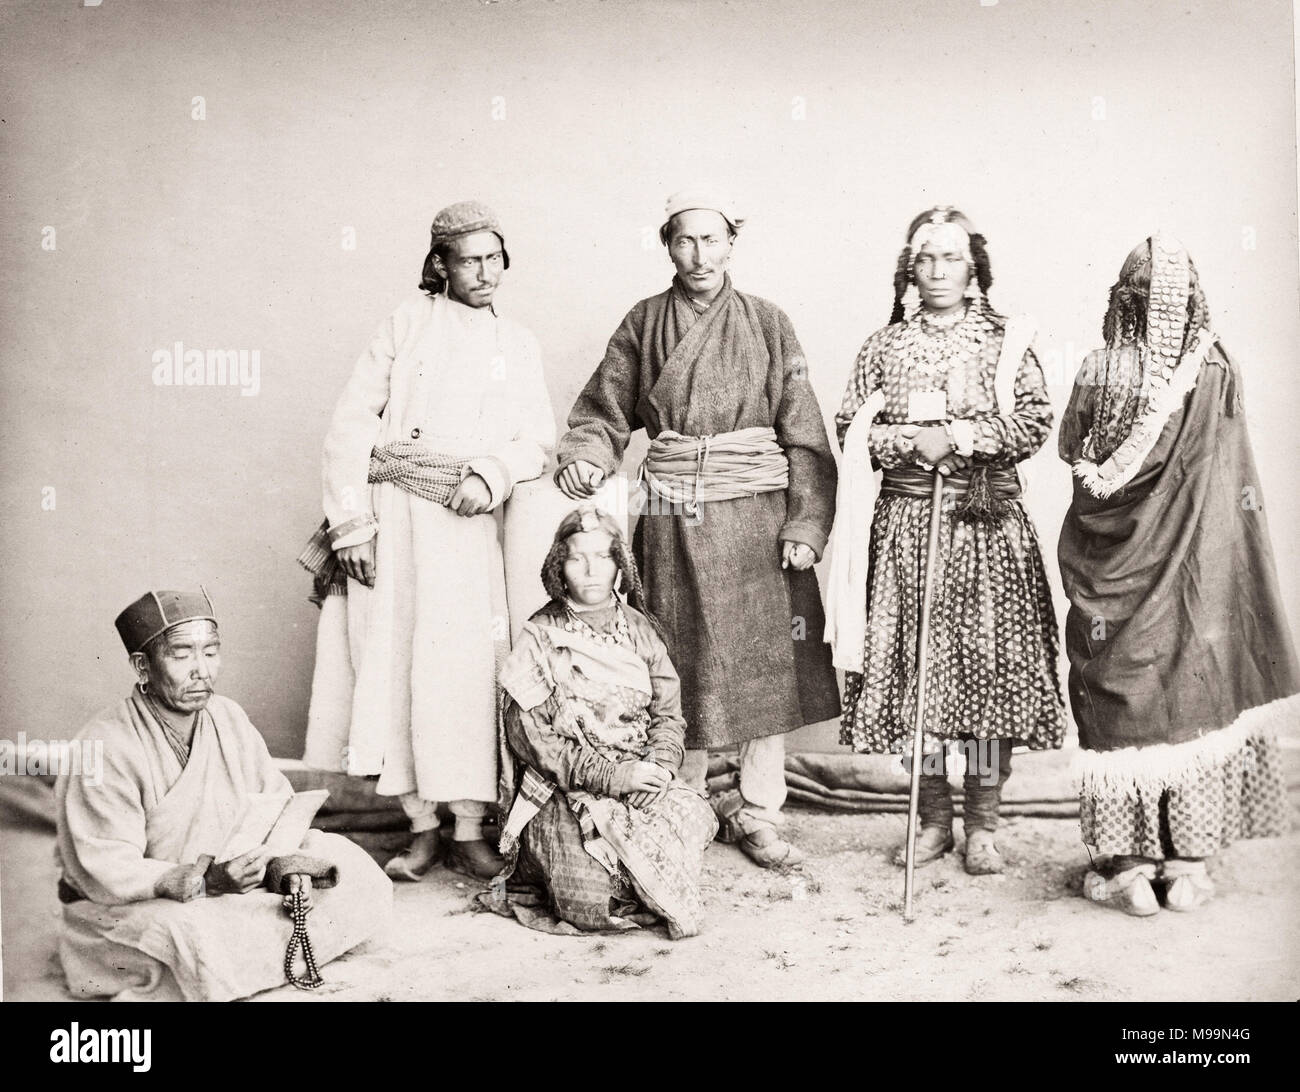 Vintage del siglo xix fotografía India - grupo de personas de Tíbet Pastor tibetano y Robertson, 1860 Foto de stock